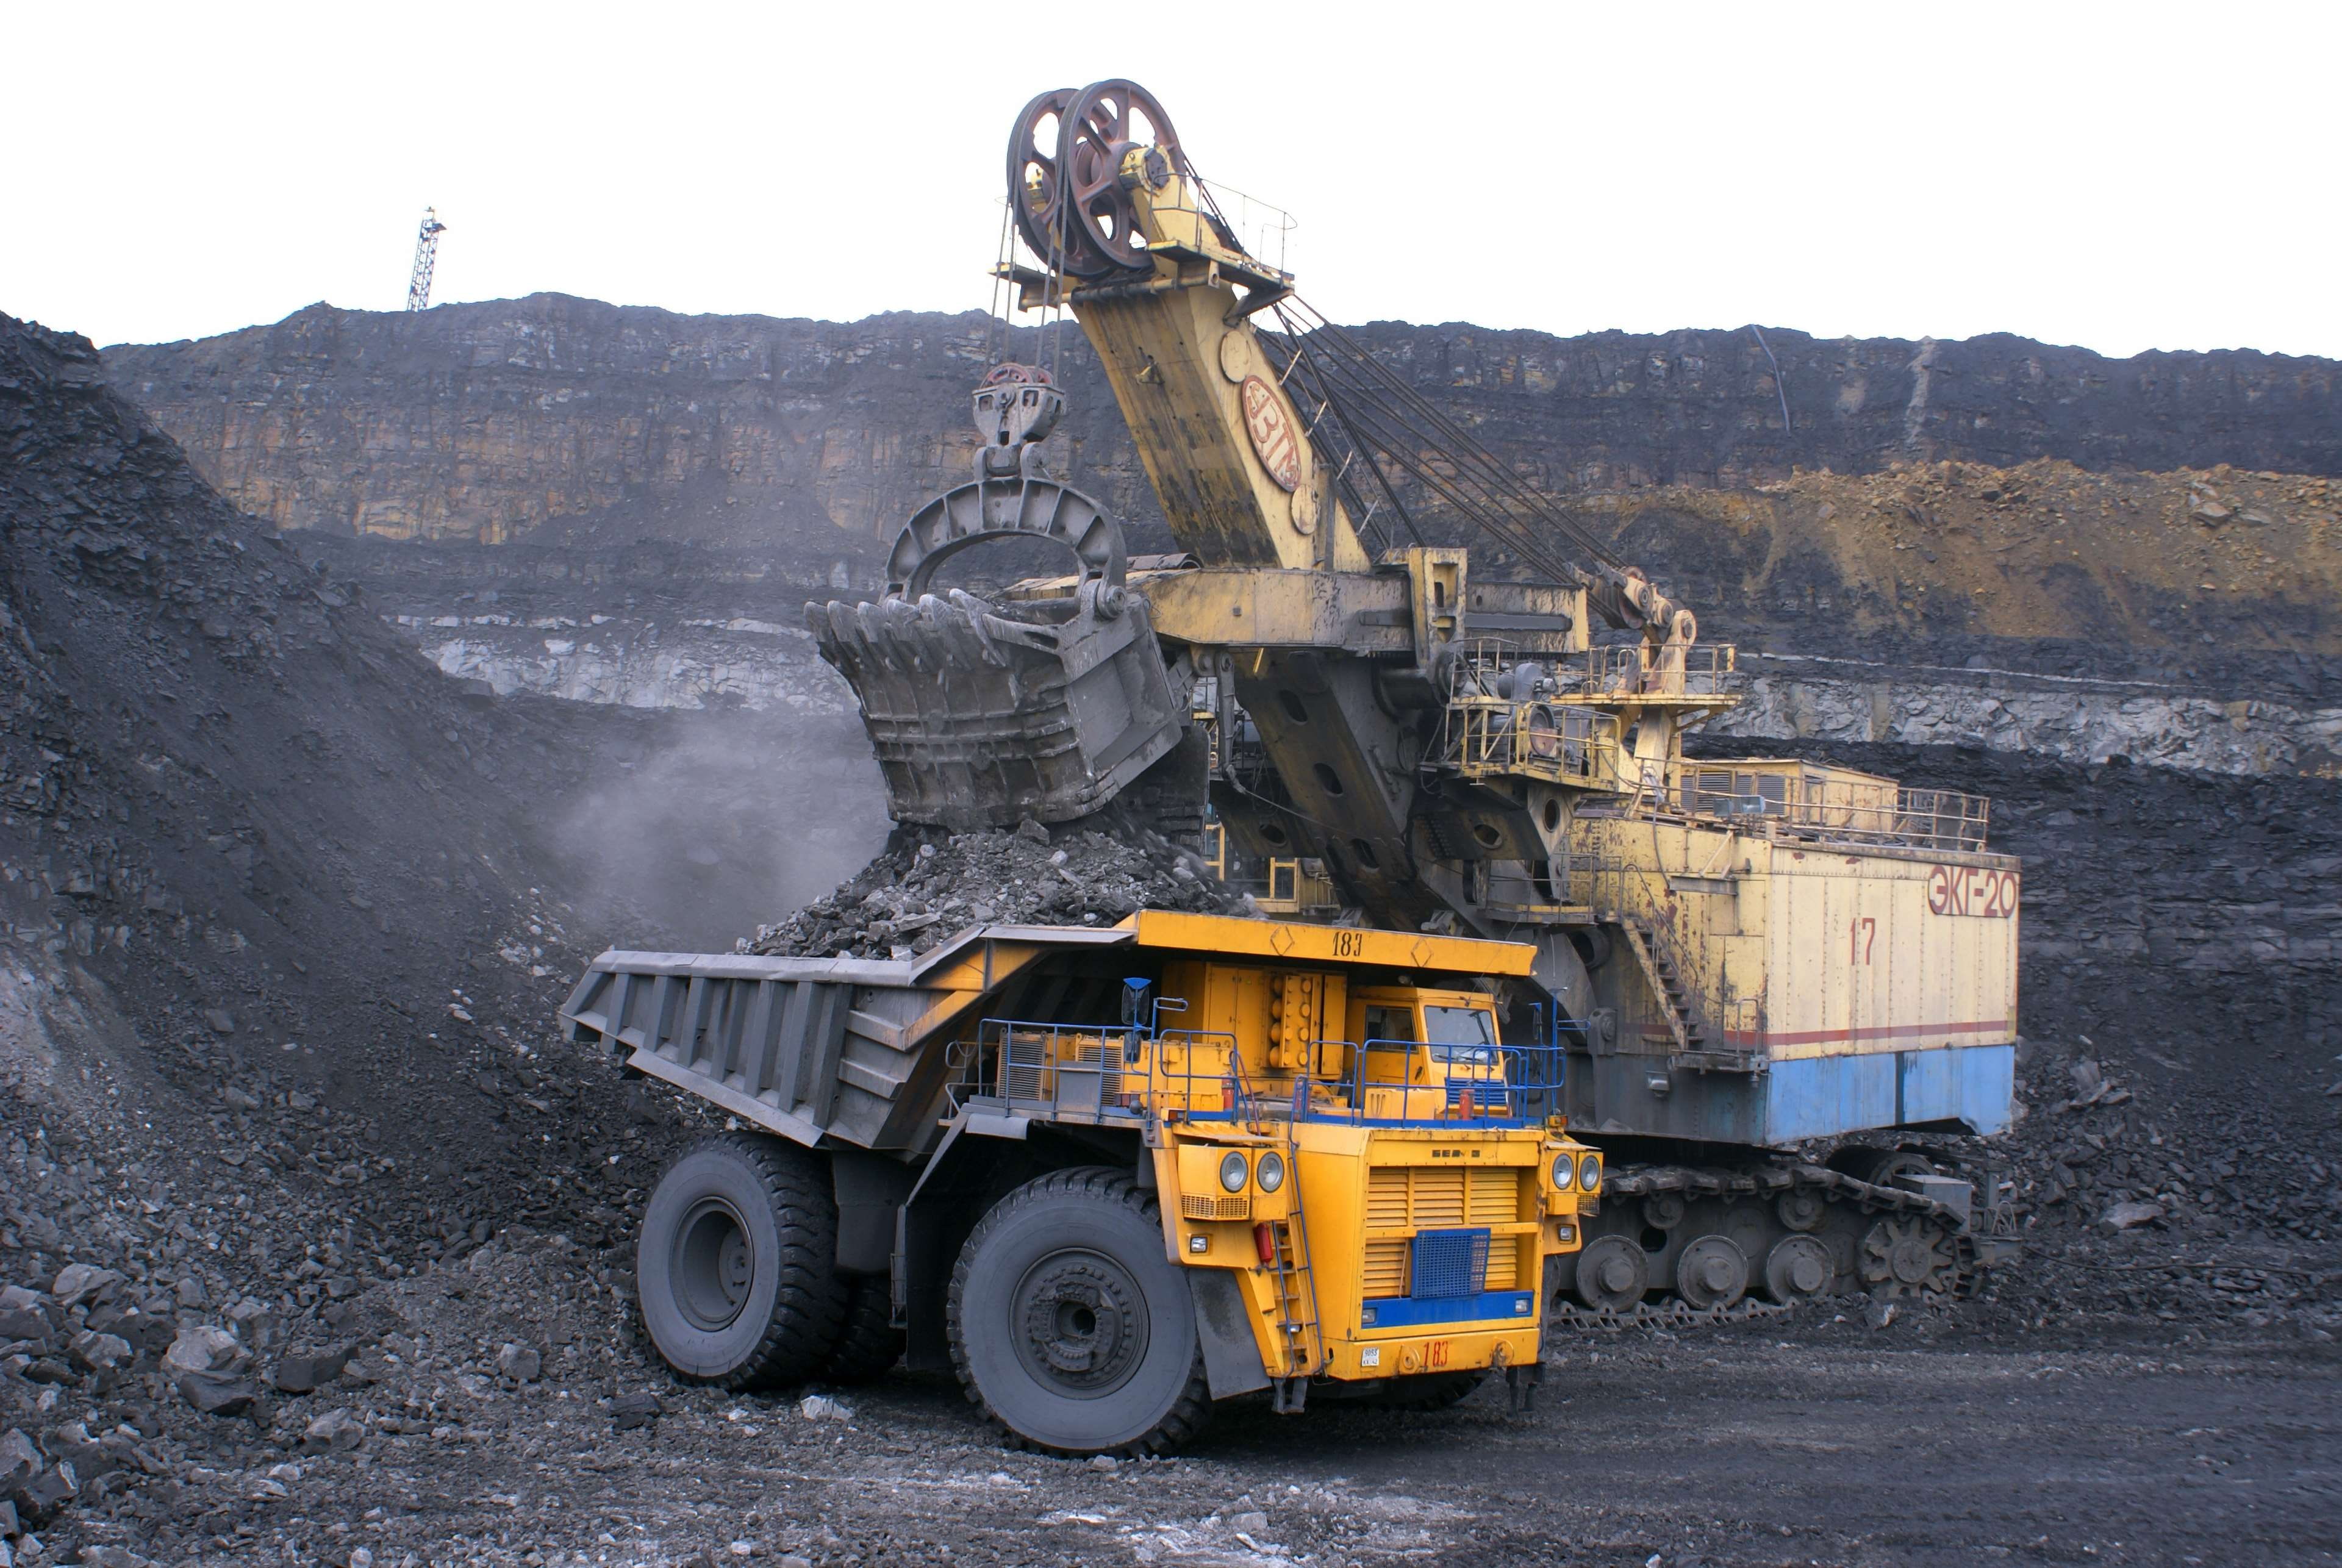 belaz, car, coal, coal mining, coal mountain, dumper, excavator